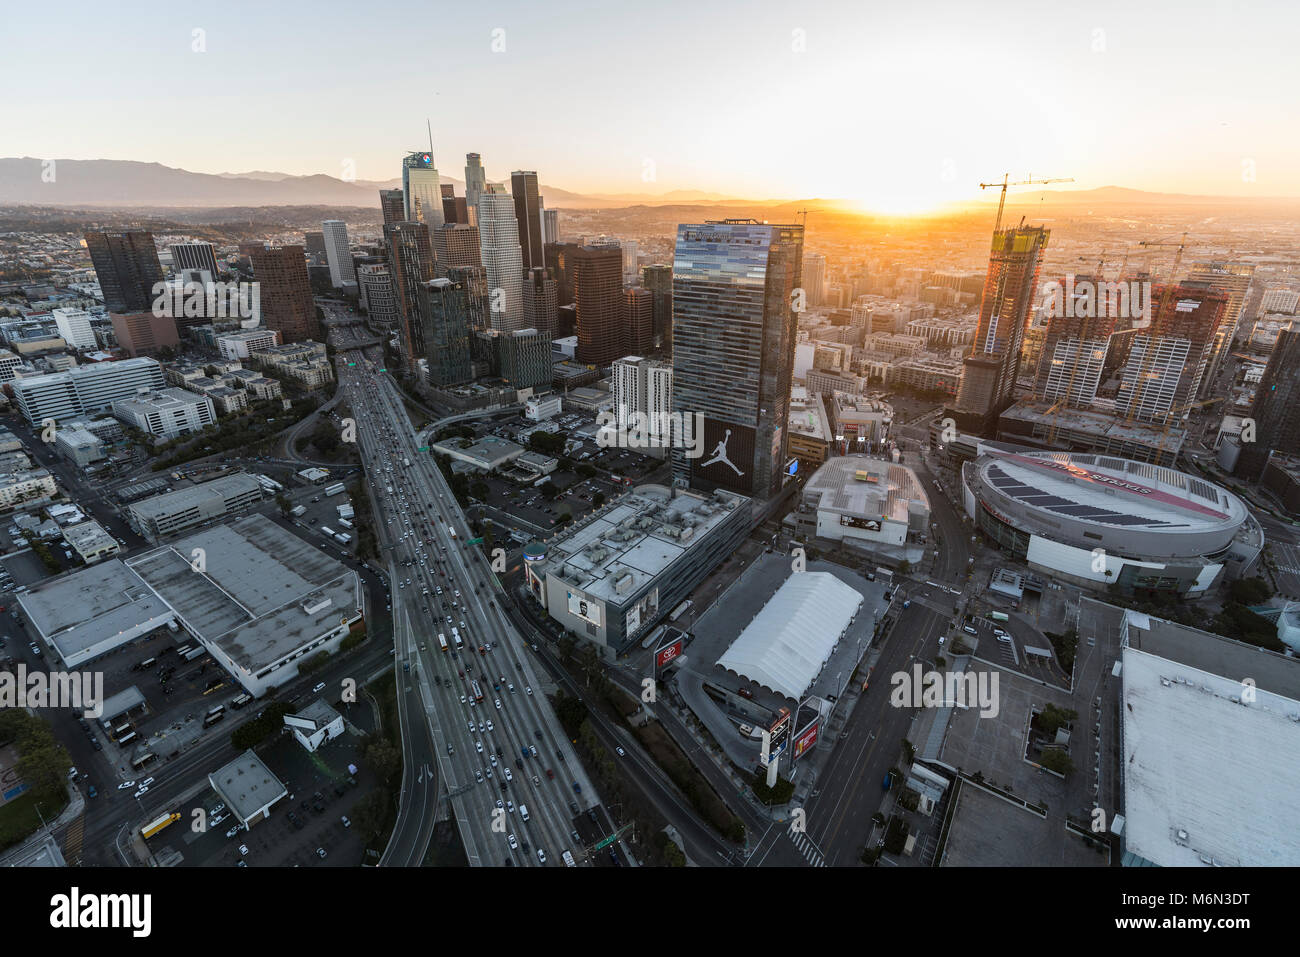 Los Angeles, California, Stati Uniti d'America - 20 Febbraio 2018: Cityscape sunrise vista aerea di torri, le strade e la superstrada nel nucleo urbano del centro cittadino di Los Angeles. Foto Stock